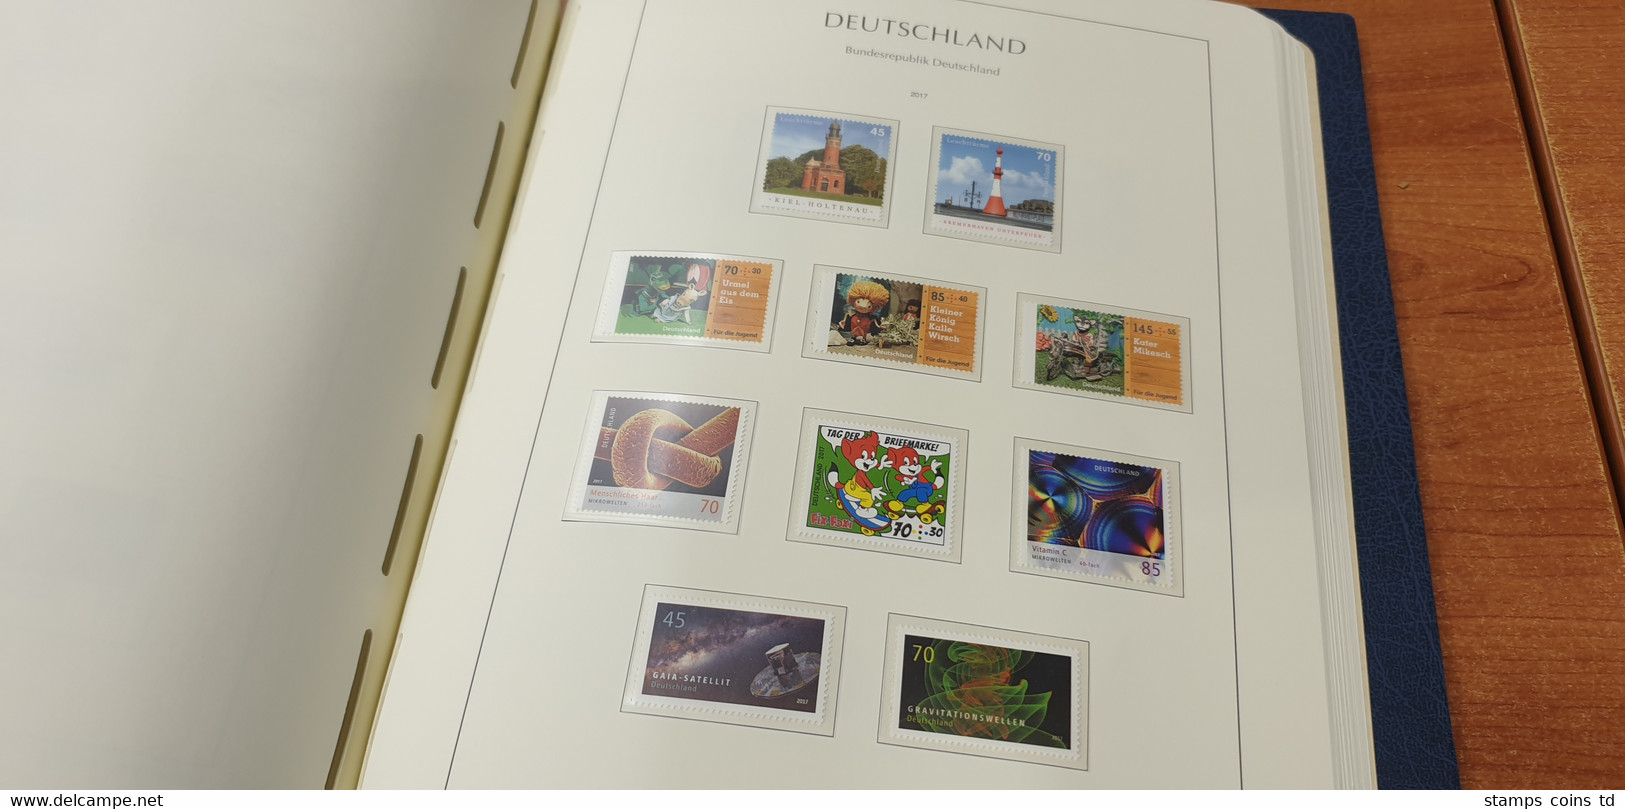 Sammlung Deutschland 2008-2020 komplett postfrisch inkl. ATM im Leuchtturm-Album